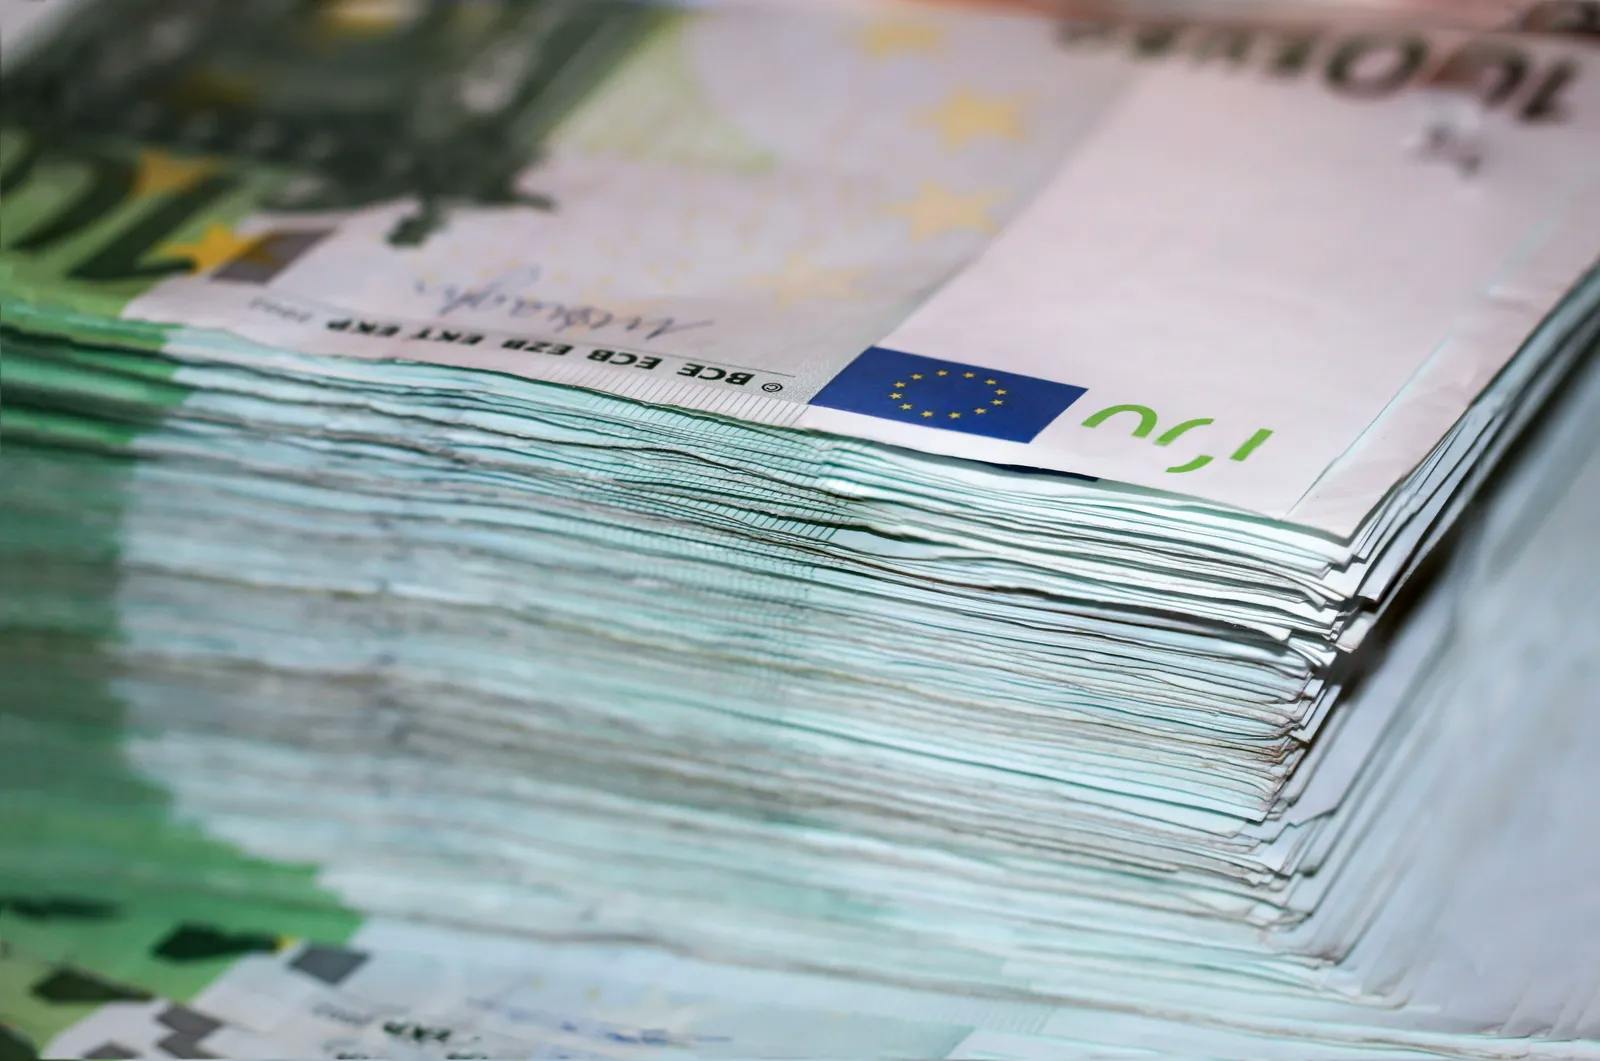 Bargeld-Obergrenze fixiert: FPÖ sieht weiteren Schritt zur Abschaffung von Bargeld